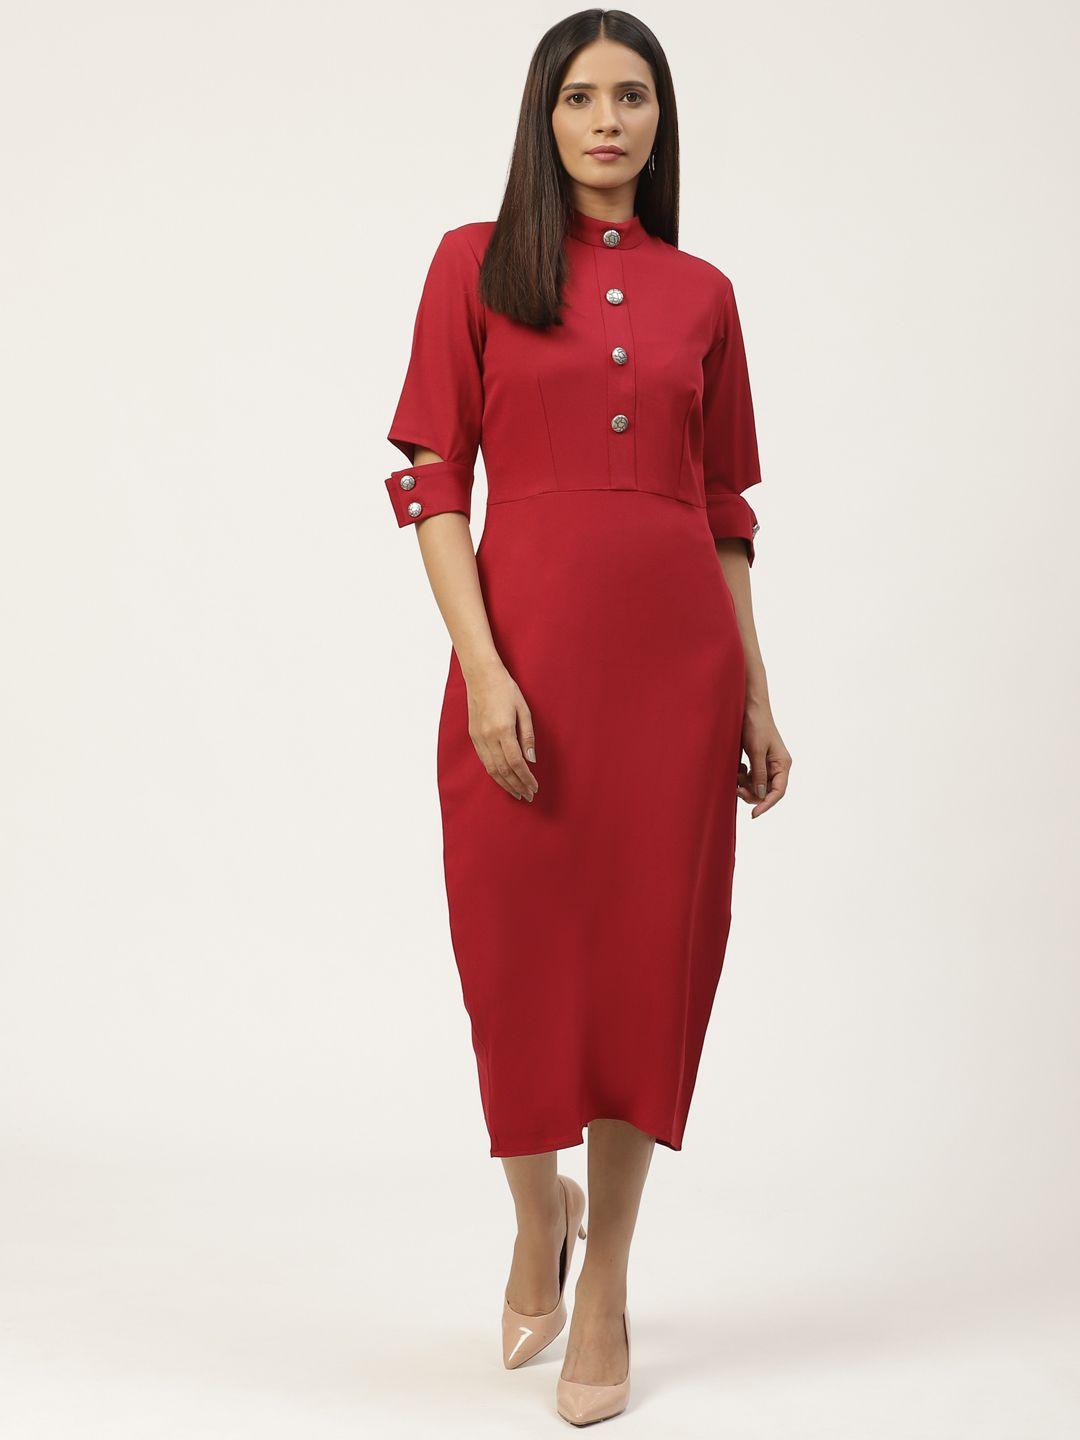 woowzerz women red solid sheath dress